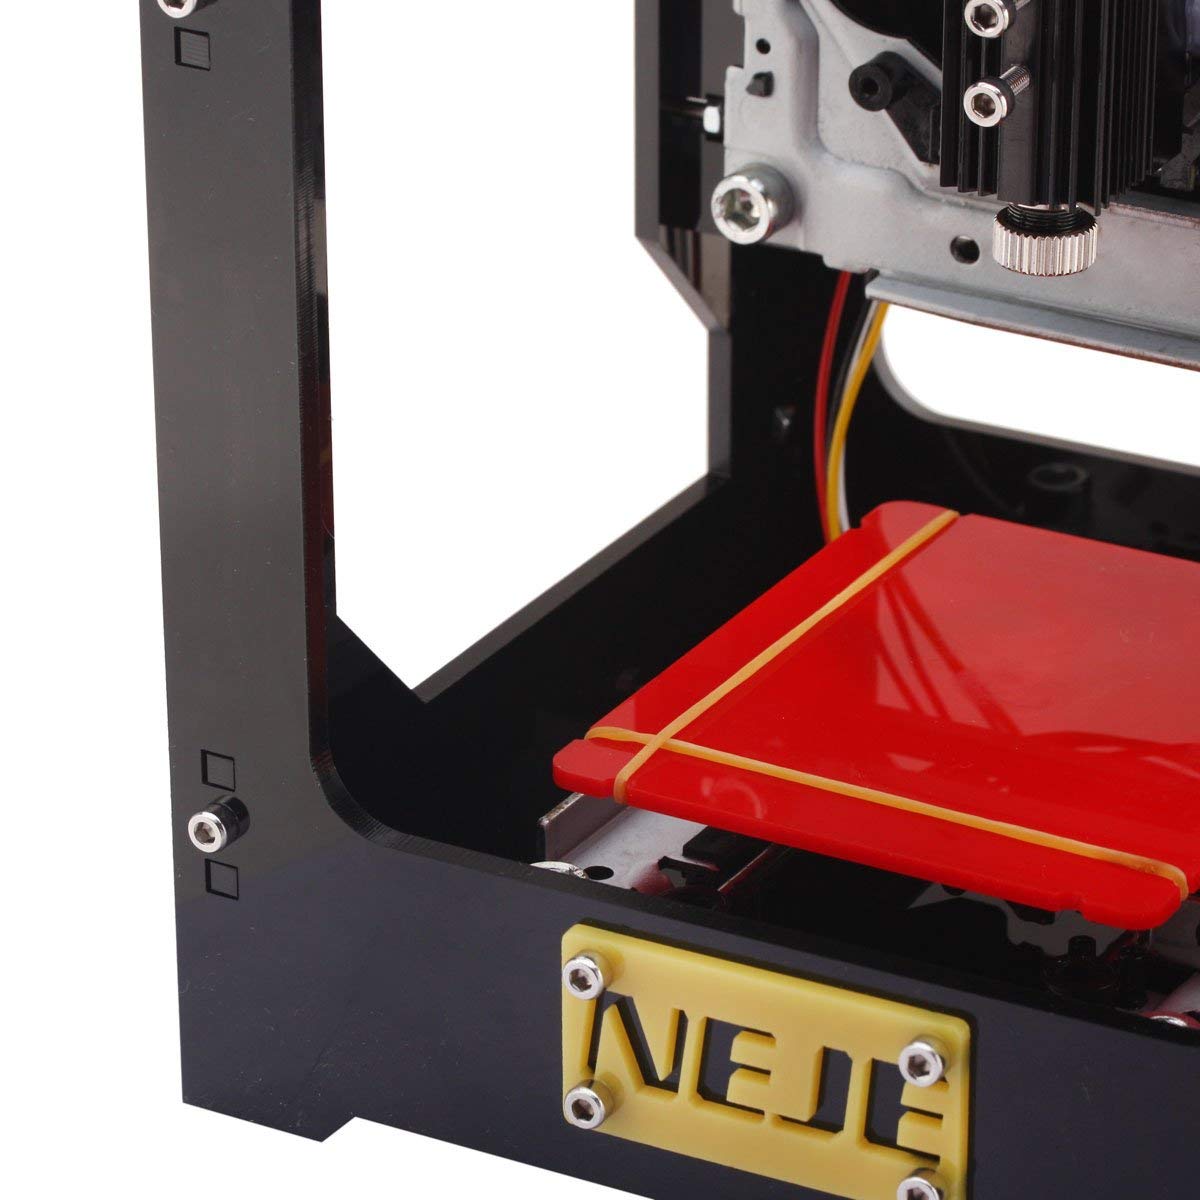 The Neje Dk 8 Kz Review A Small Desktop Laser Engraving Machine